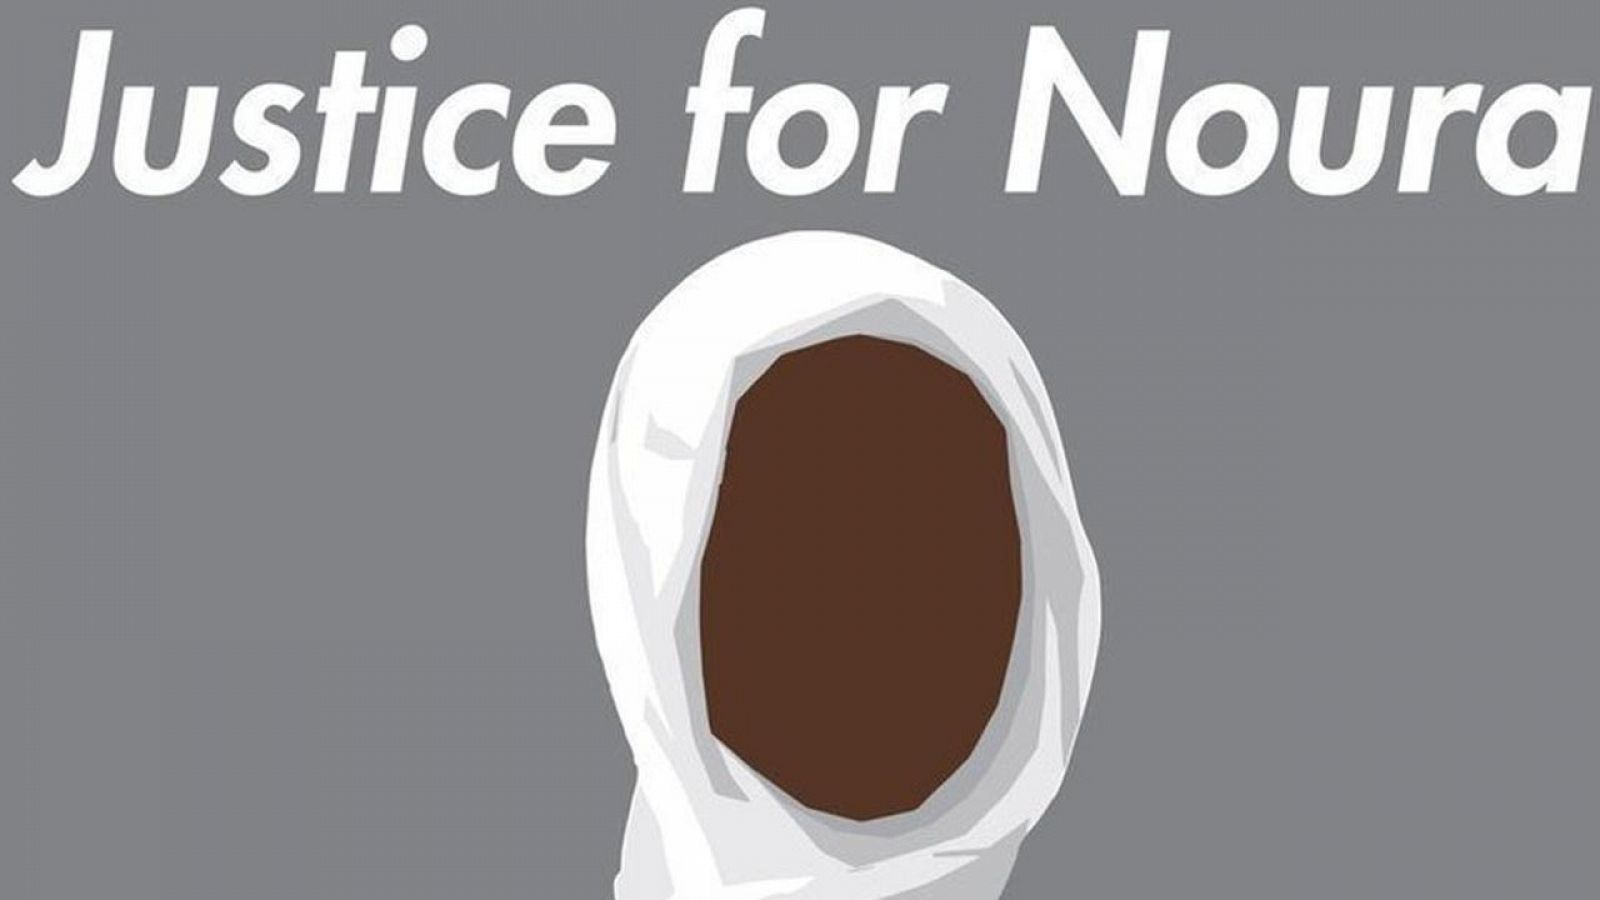 Imagen de la campaña que pide justicia para Noura Hussein en redes sociales